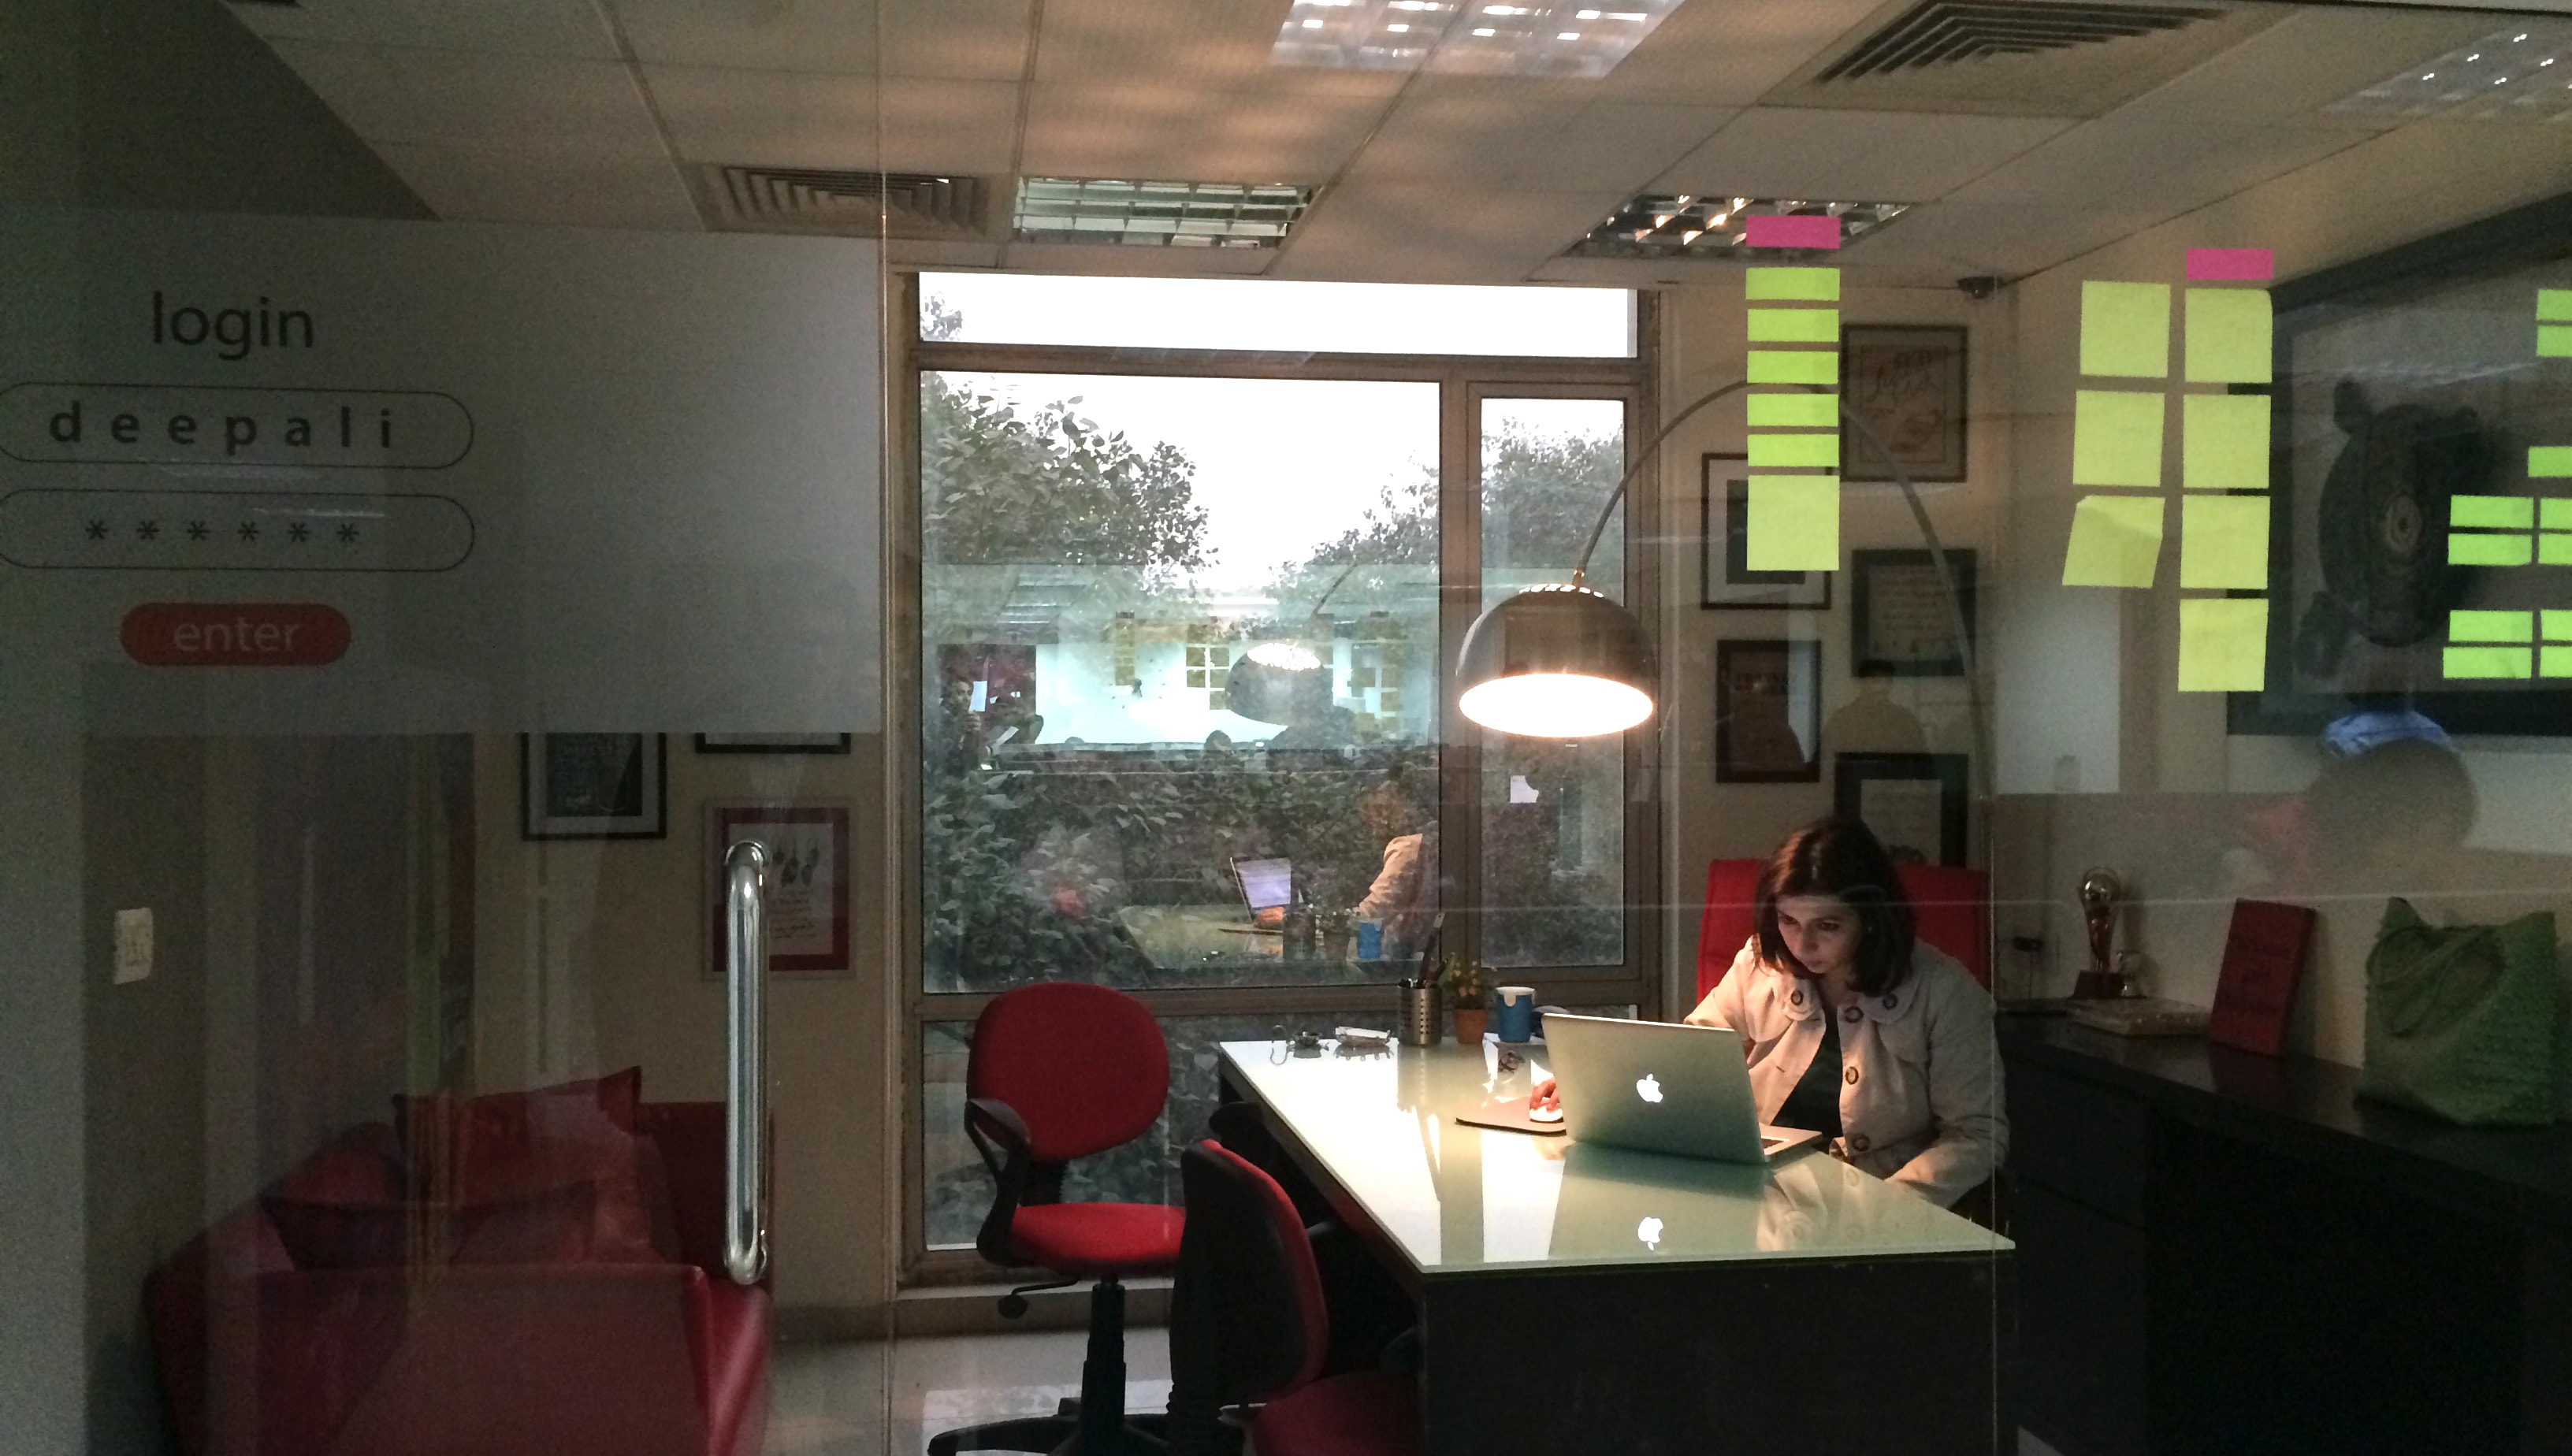 Deepali's Think Design office workspace